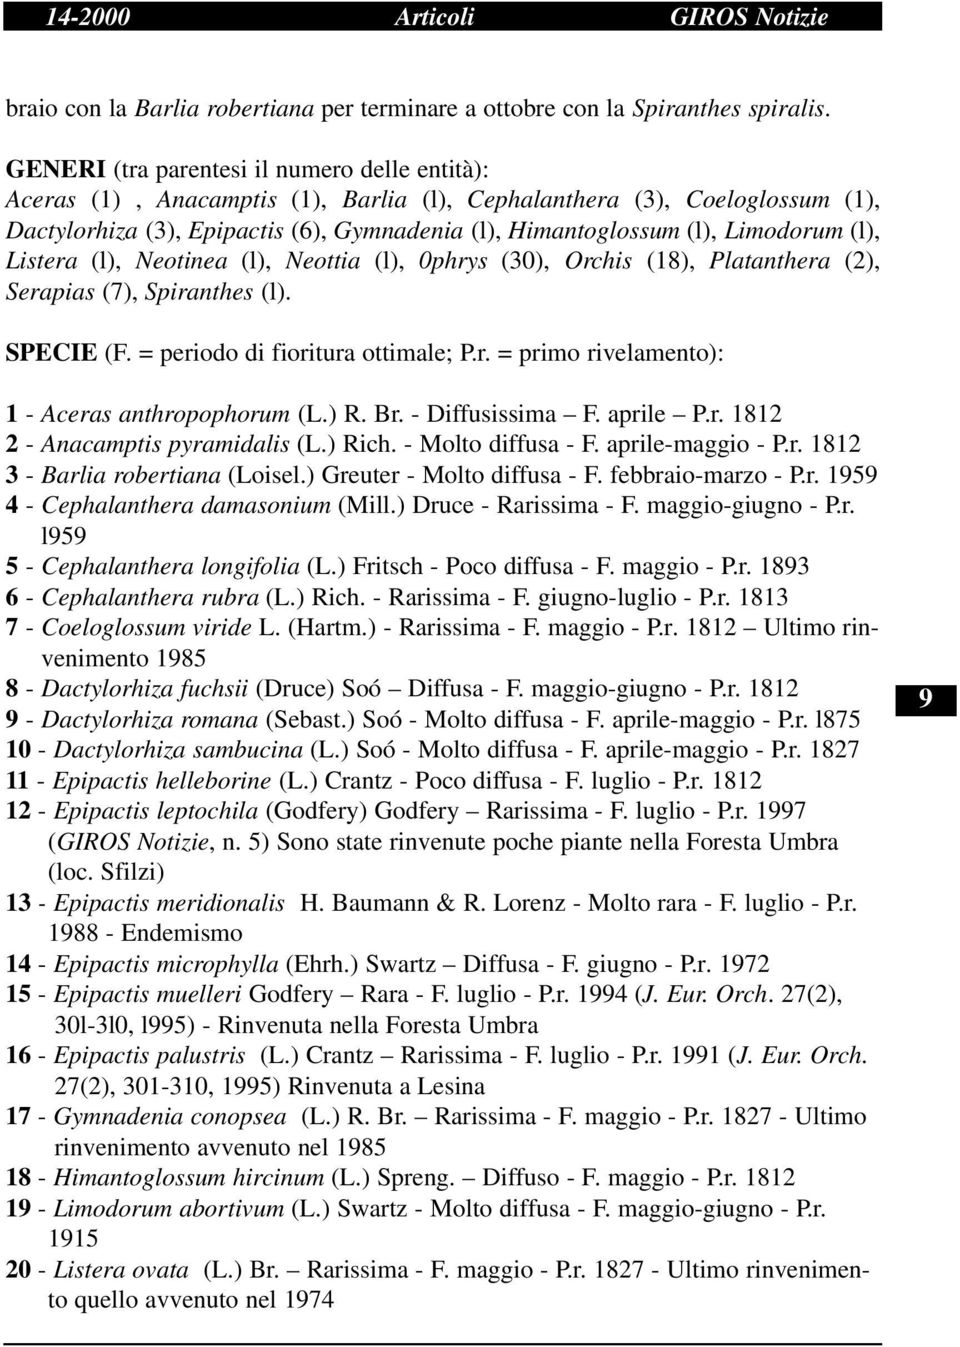 Limodorum (l), Listera (l), Neotinea (l), Neottia (l), 0phrys (30), Orchis (18), Platanthera (2), Serapias (7), Spiranthes (l). SPECIE (F. = periodo di fioritura ottimale; P.r. = primo rivelamento): 1 - Aceras anthropophorum (L.